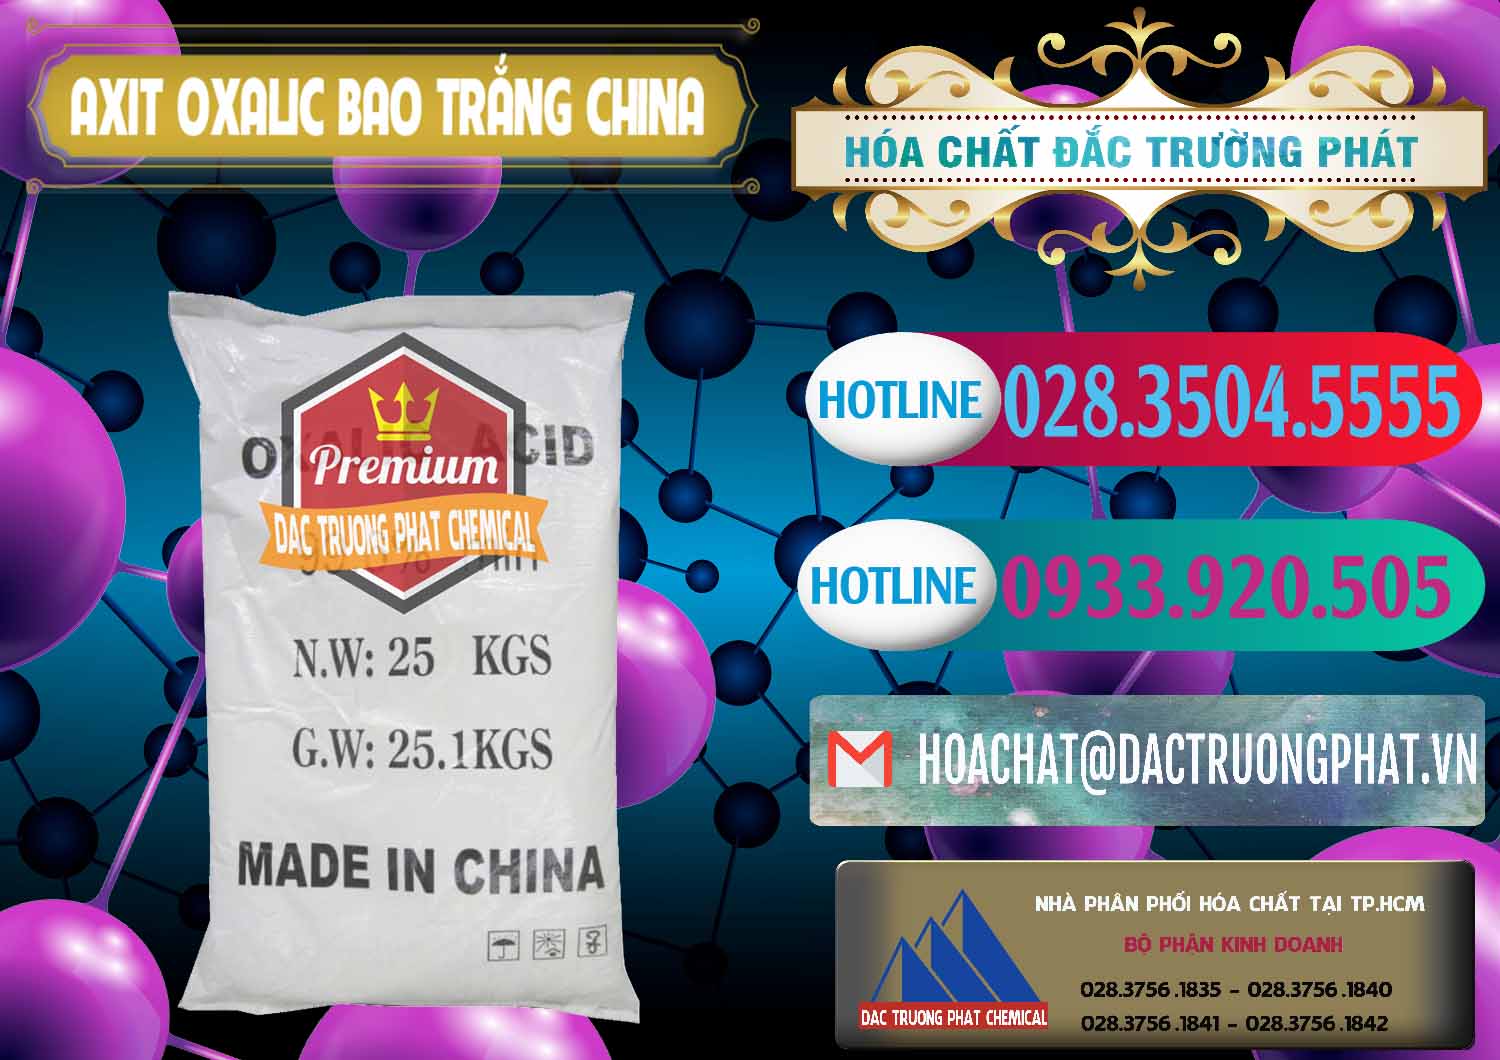 Nơi chuyên kinh doanh và bán Acid Oxalic – Axit Oxalic 99.6% Bao Trắng Trung Quốc China - 0270 - Công ty cung ứng & phân phối hóa chất tại TP.HCM - truongphat.vn